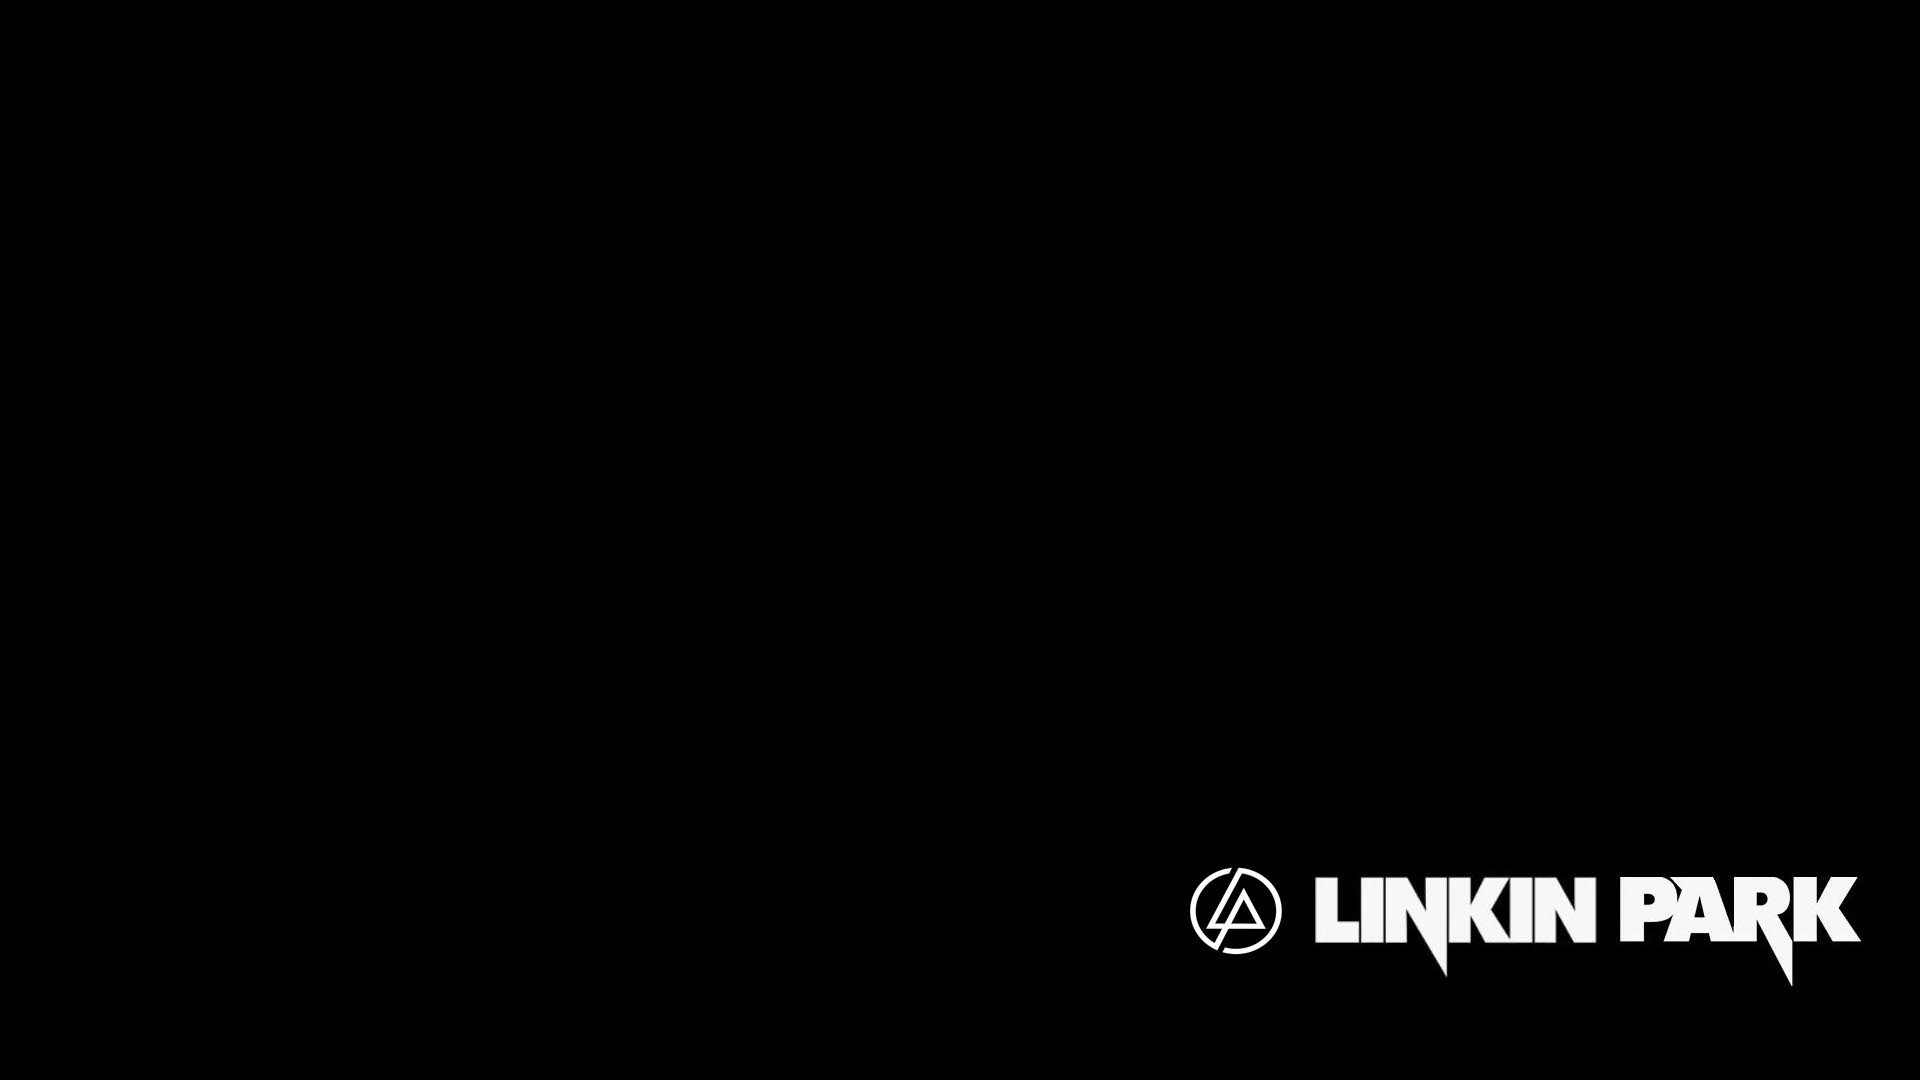 Với hình nền HD của Linkin Park Pitch Black, bạn sẽ được trải nghiệm một trải nghiệm âm nhạc đặc biệt. Cùng thưởng thức những hình ảnh đen tối của nhạc rock này. Hãy xem hình ảnh liên quan để có được sự trải nghiệm tuyệt vời này!